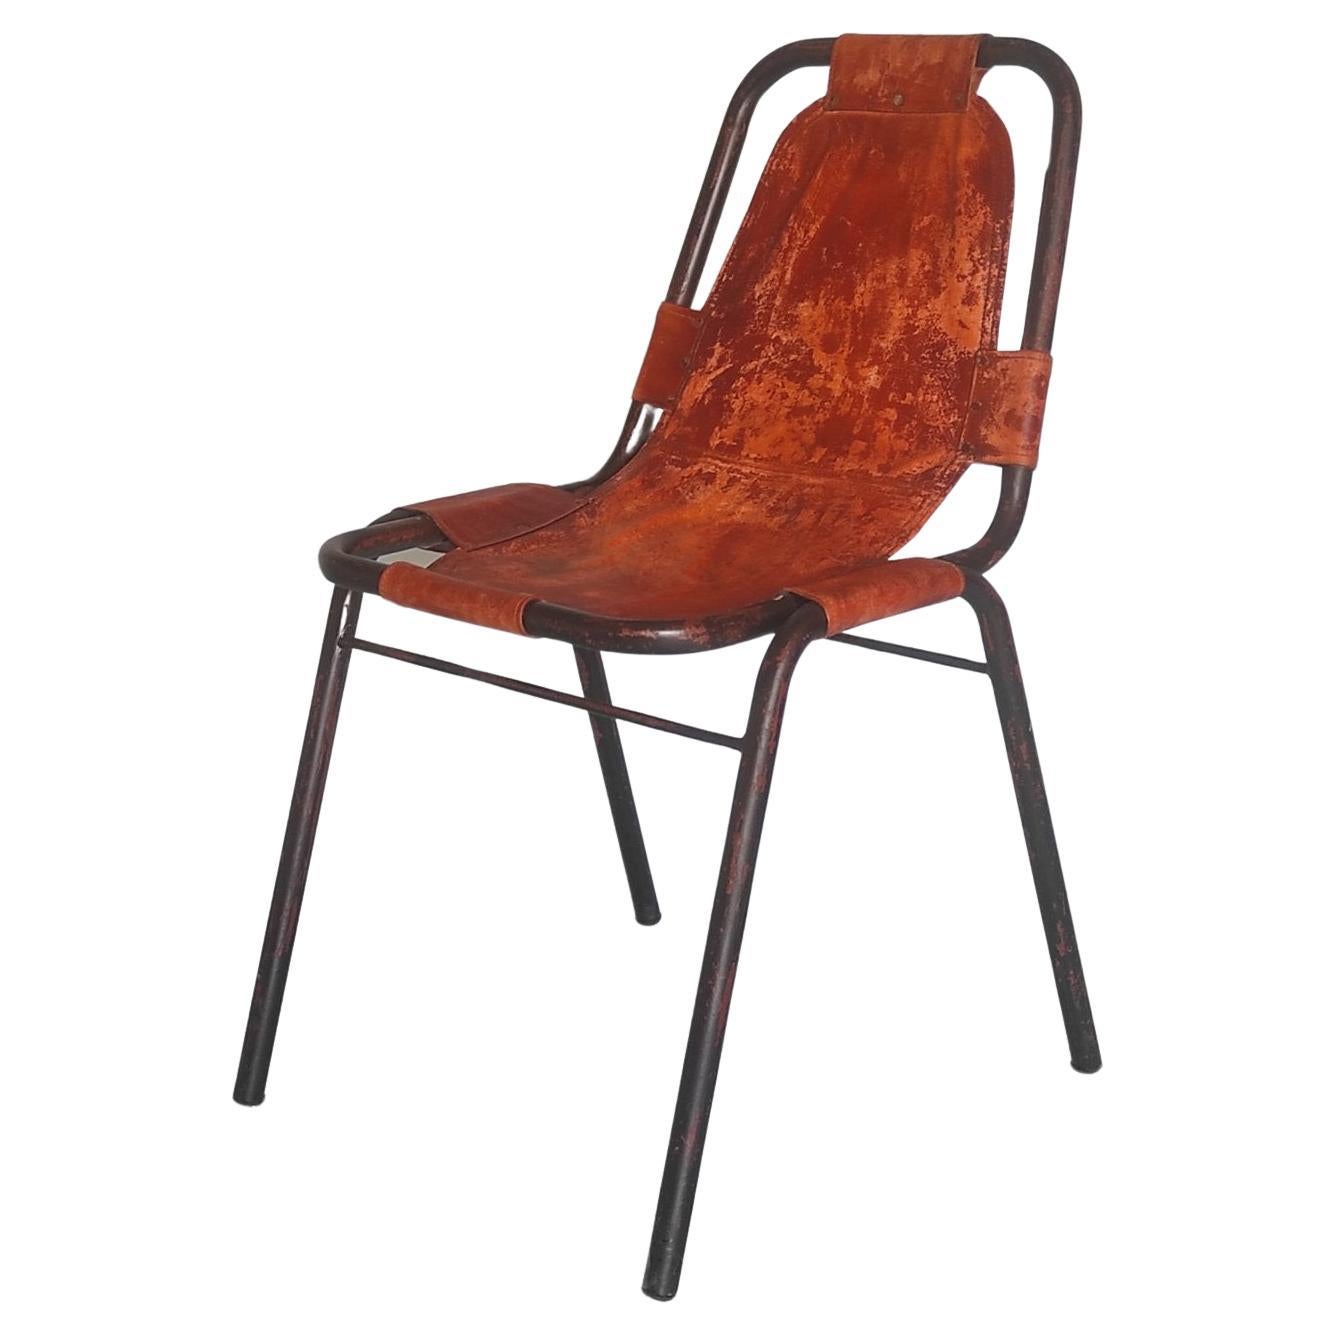 Une de deux chaises DalVera Les Arcs 1960s